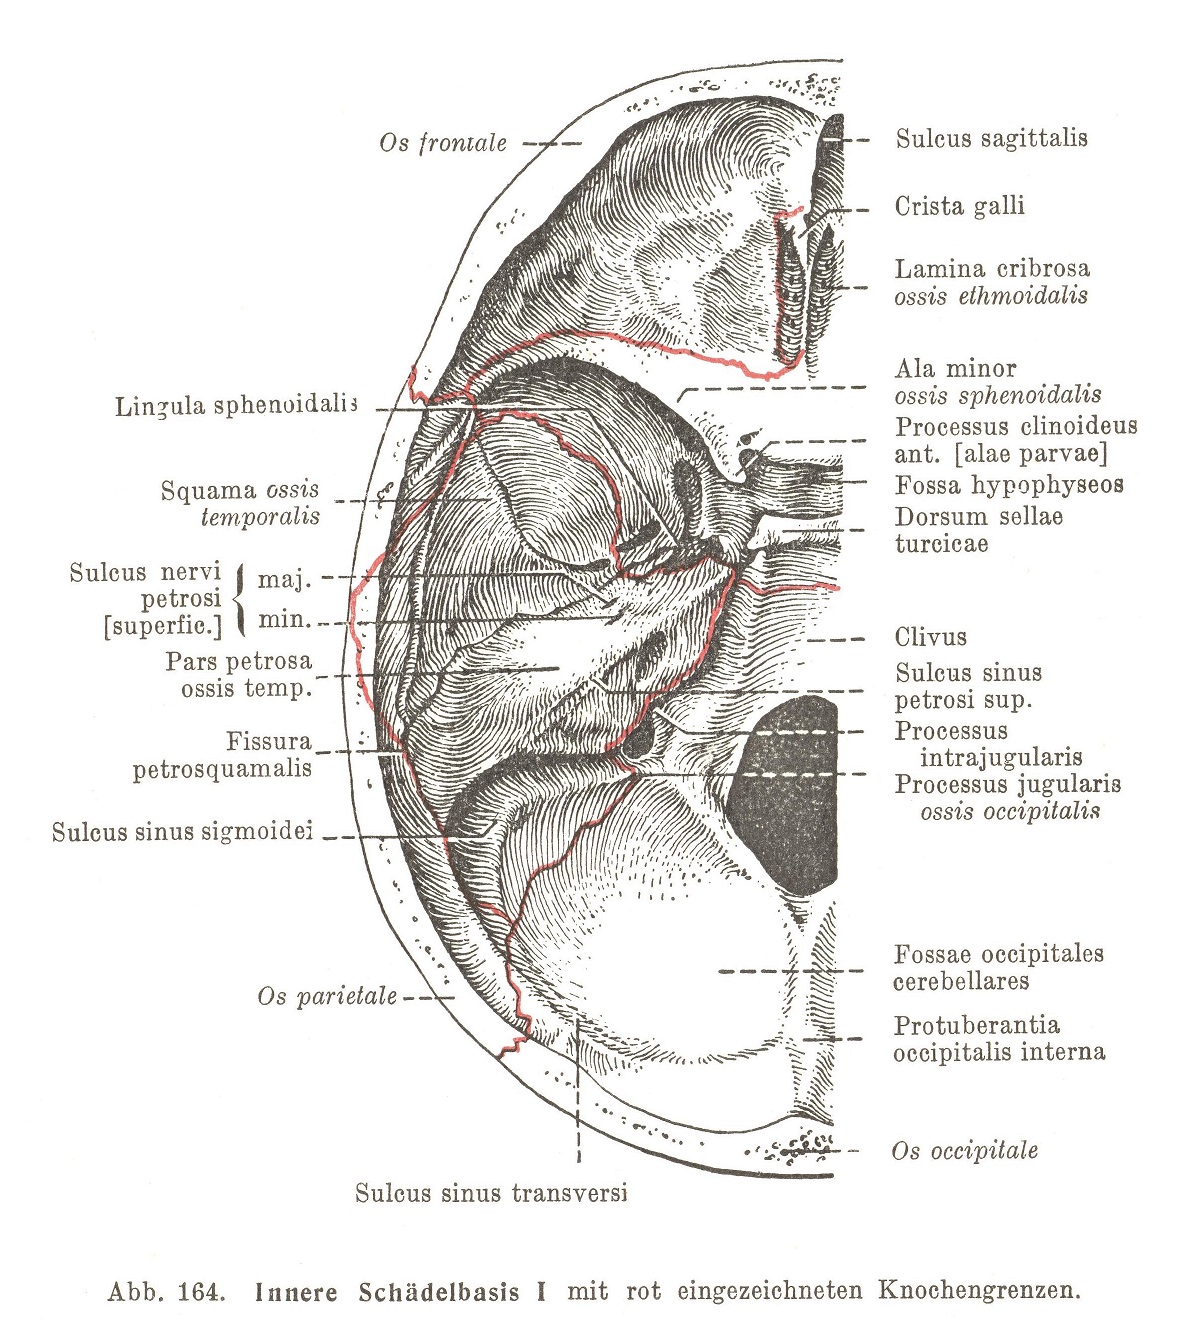 Innere Schädelbasis I mit rot eingezeichneten Knochengrenzen